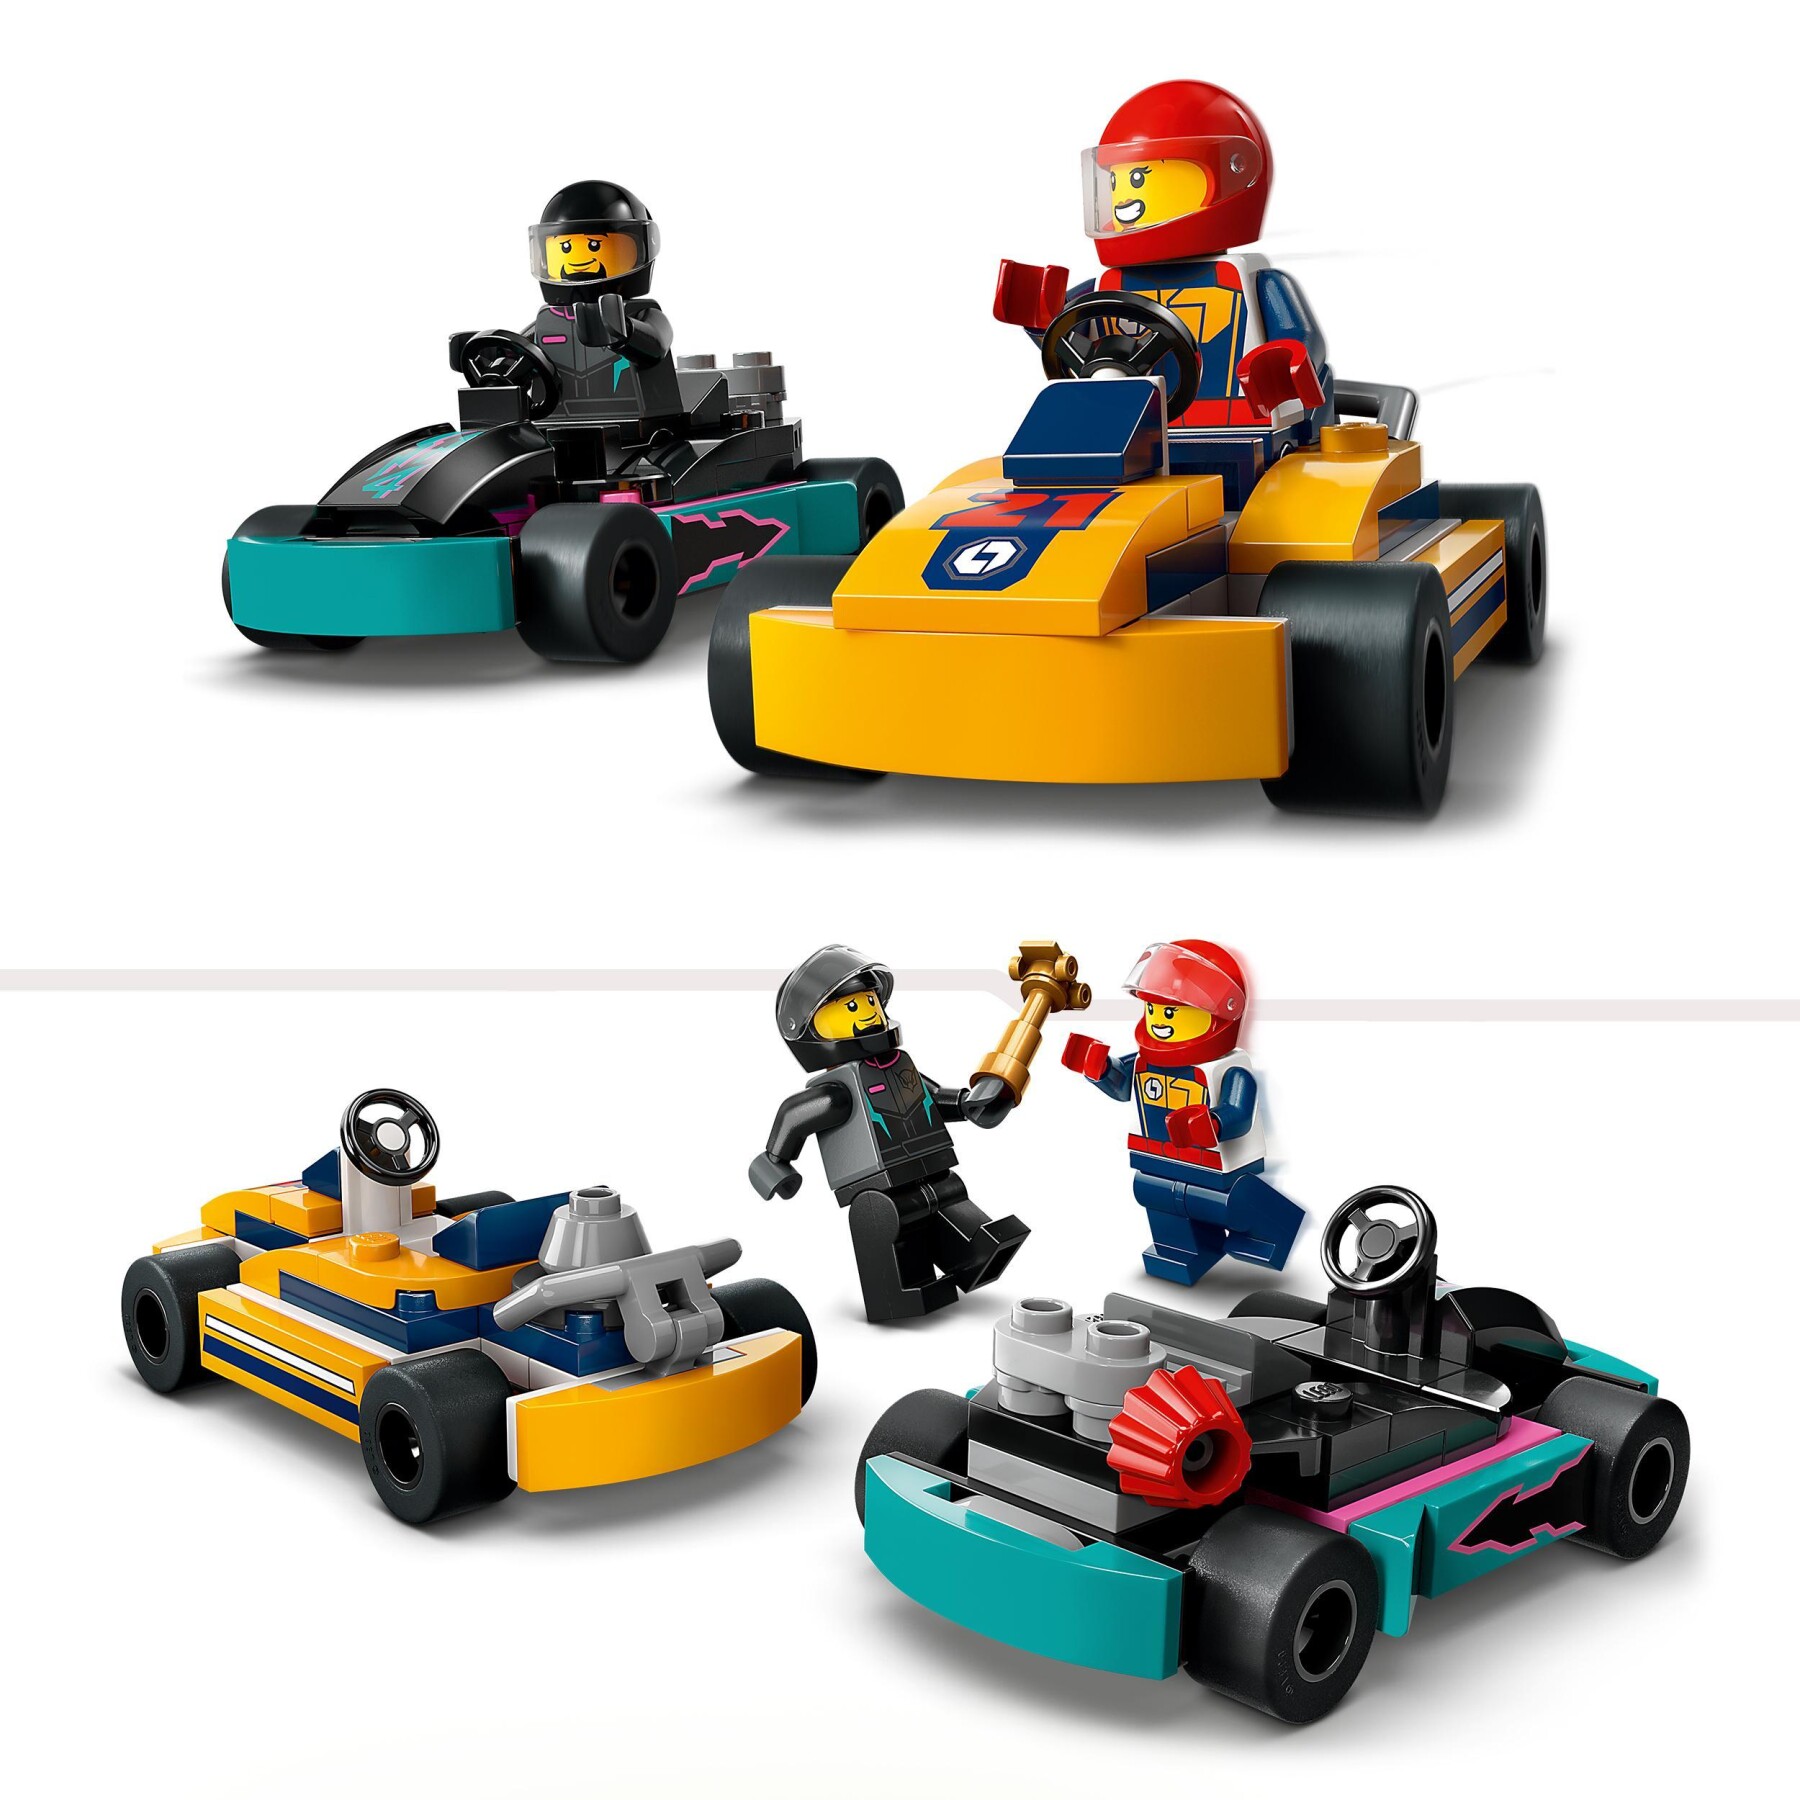 Lego city 60400 go-kart e piloti, modellini da costruire di mini go kart da corsa, veicoli giocattolo per bambini di 5+ anni - LEGO CITY